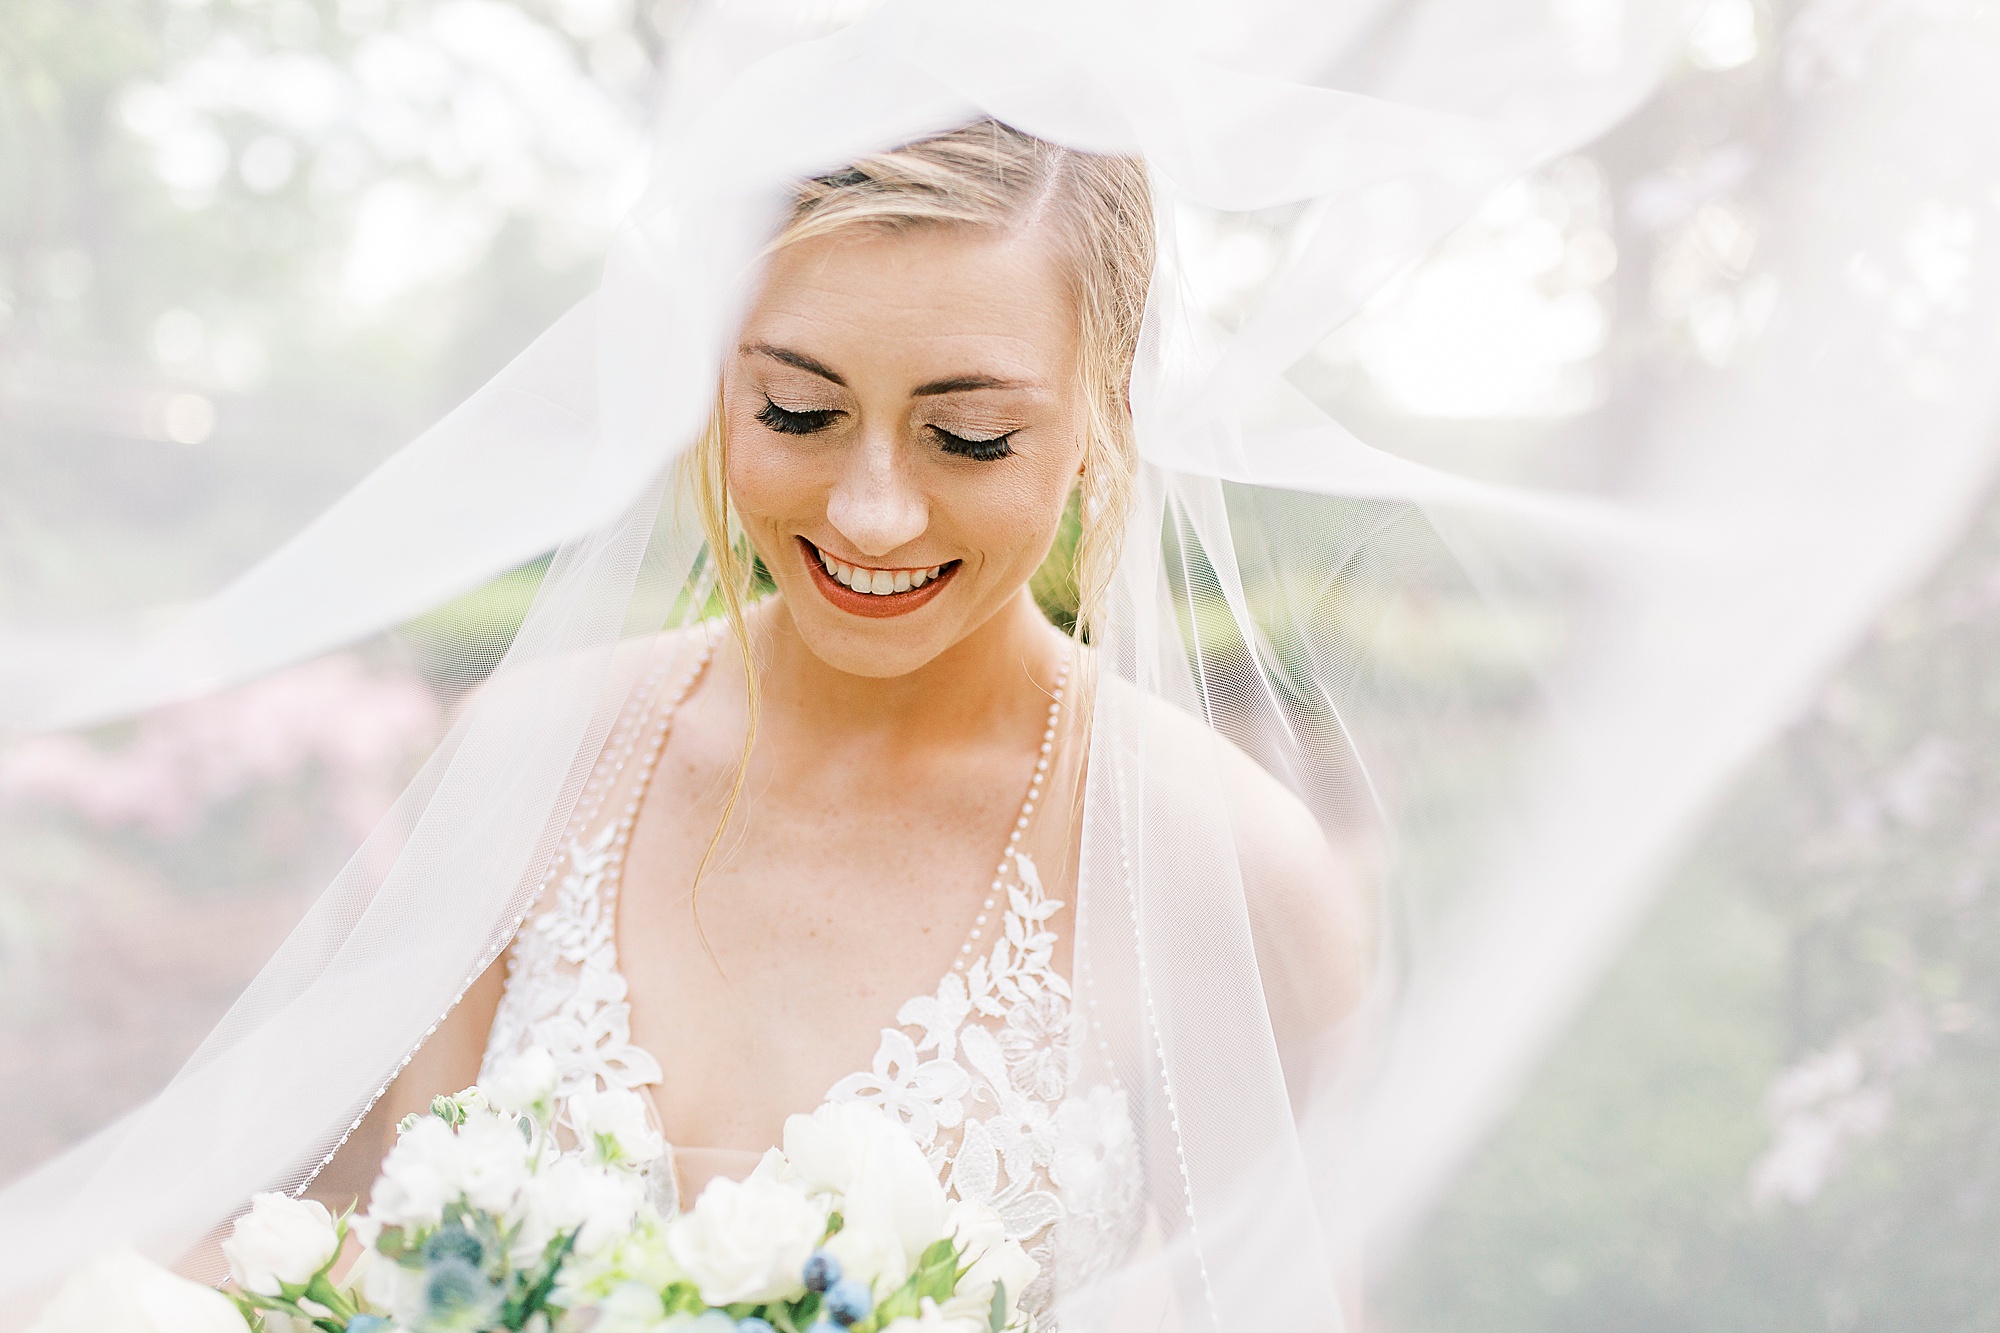 bride laughs under veil during bridal portraits